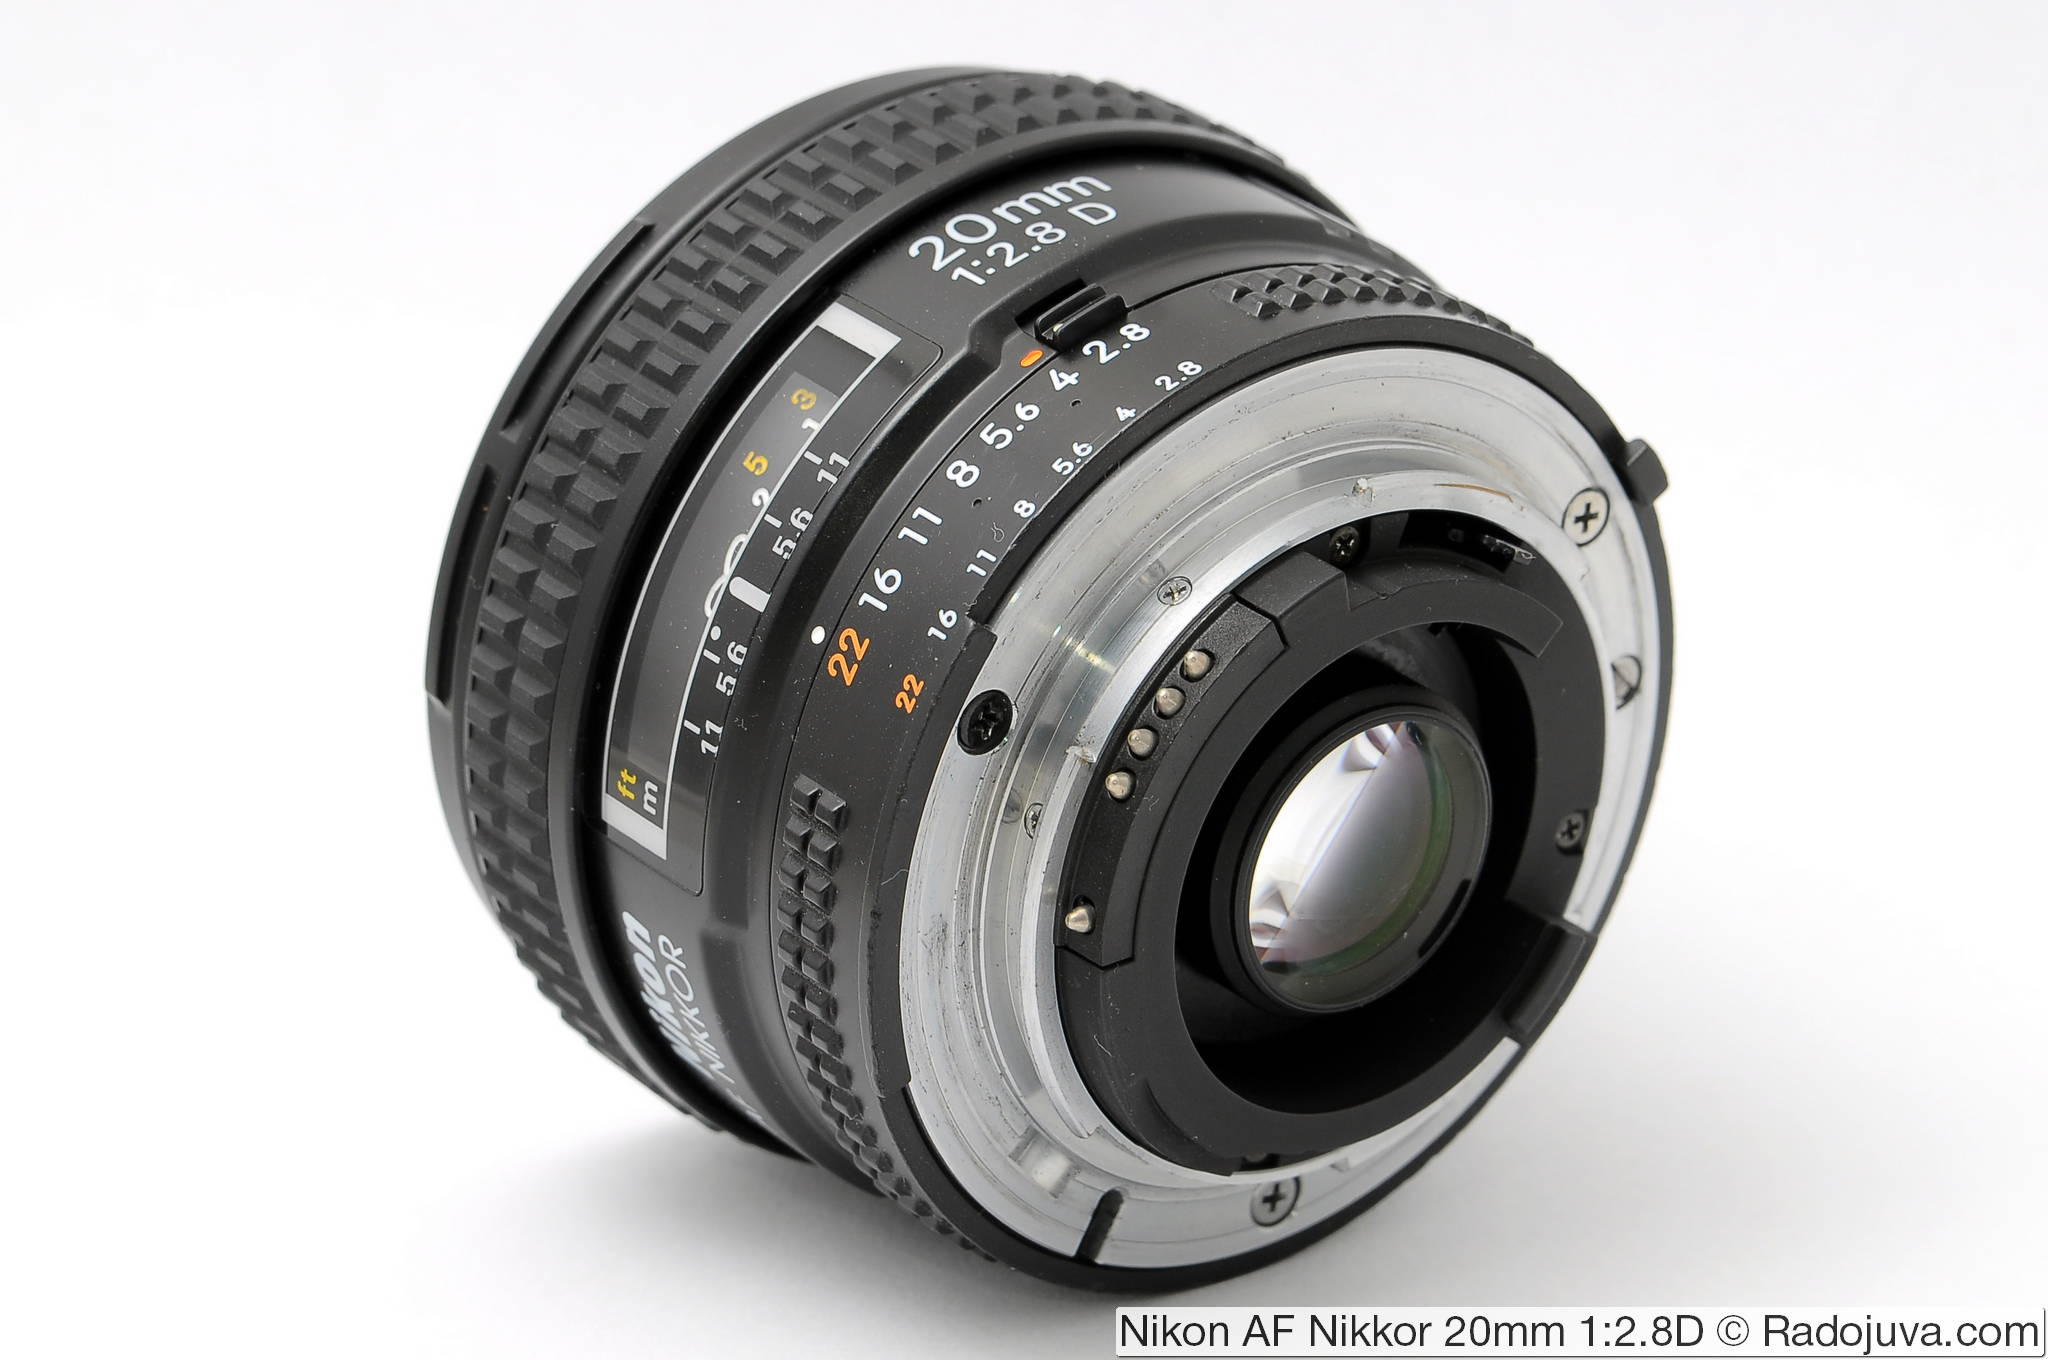 Manuale d'uso Nikon AF Nikkor 20mm 20 mm f/2.8 2.8 instructions 